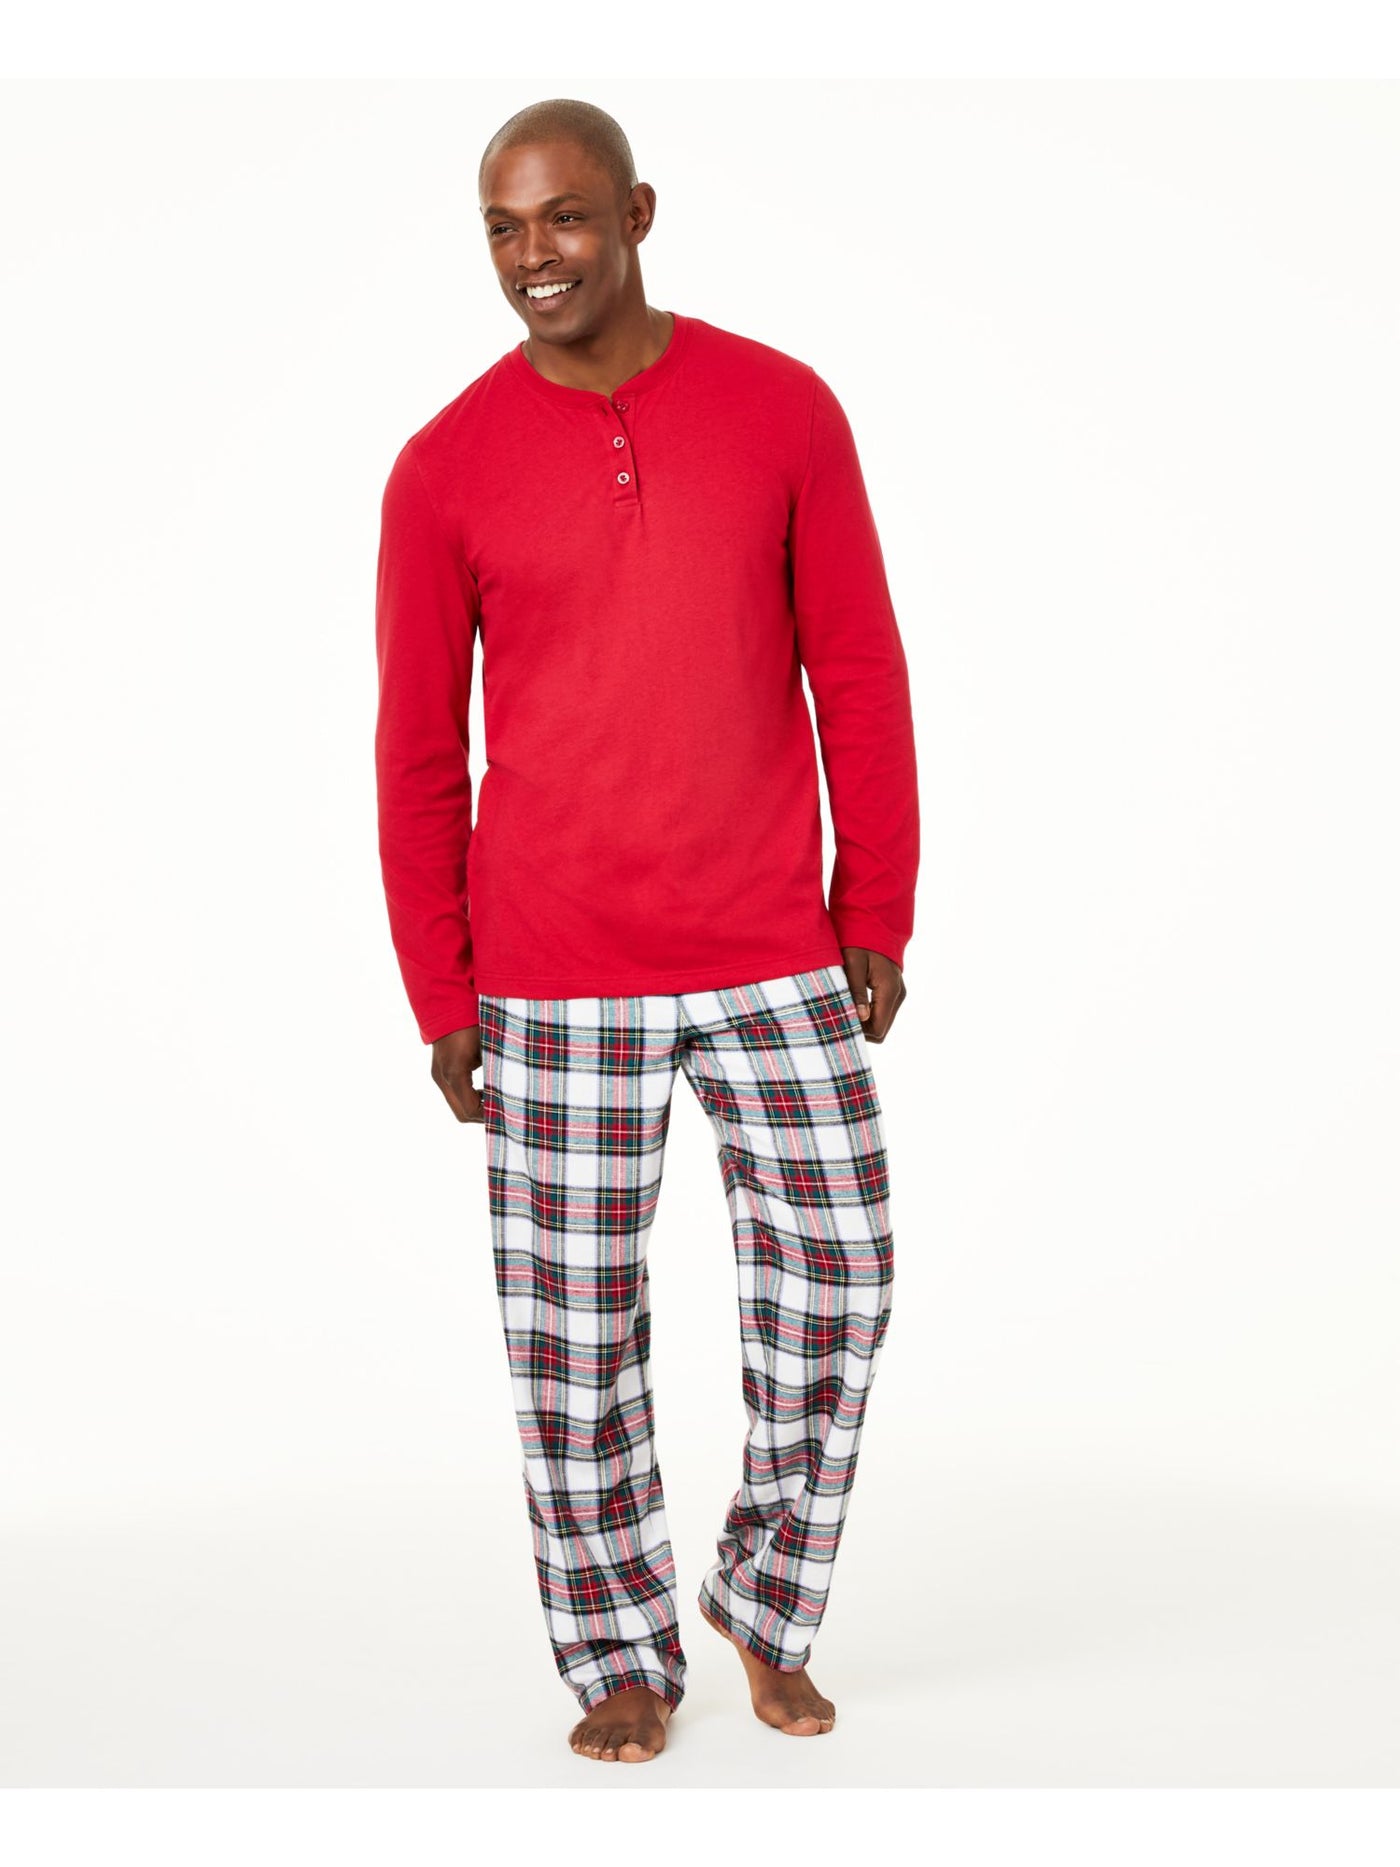 FAMILY PJs Intimates Red Plaid Sleepwear Pajamas S